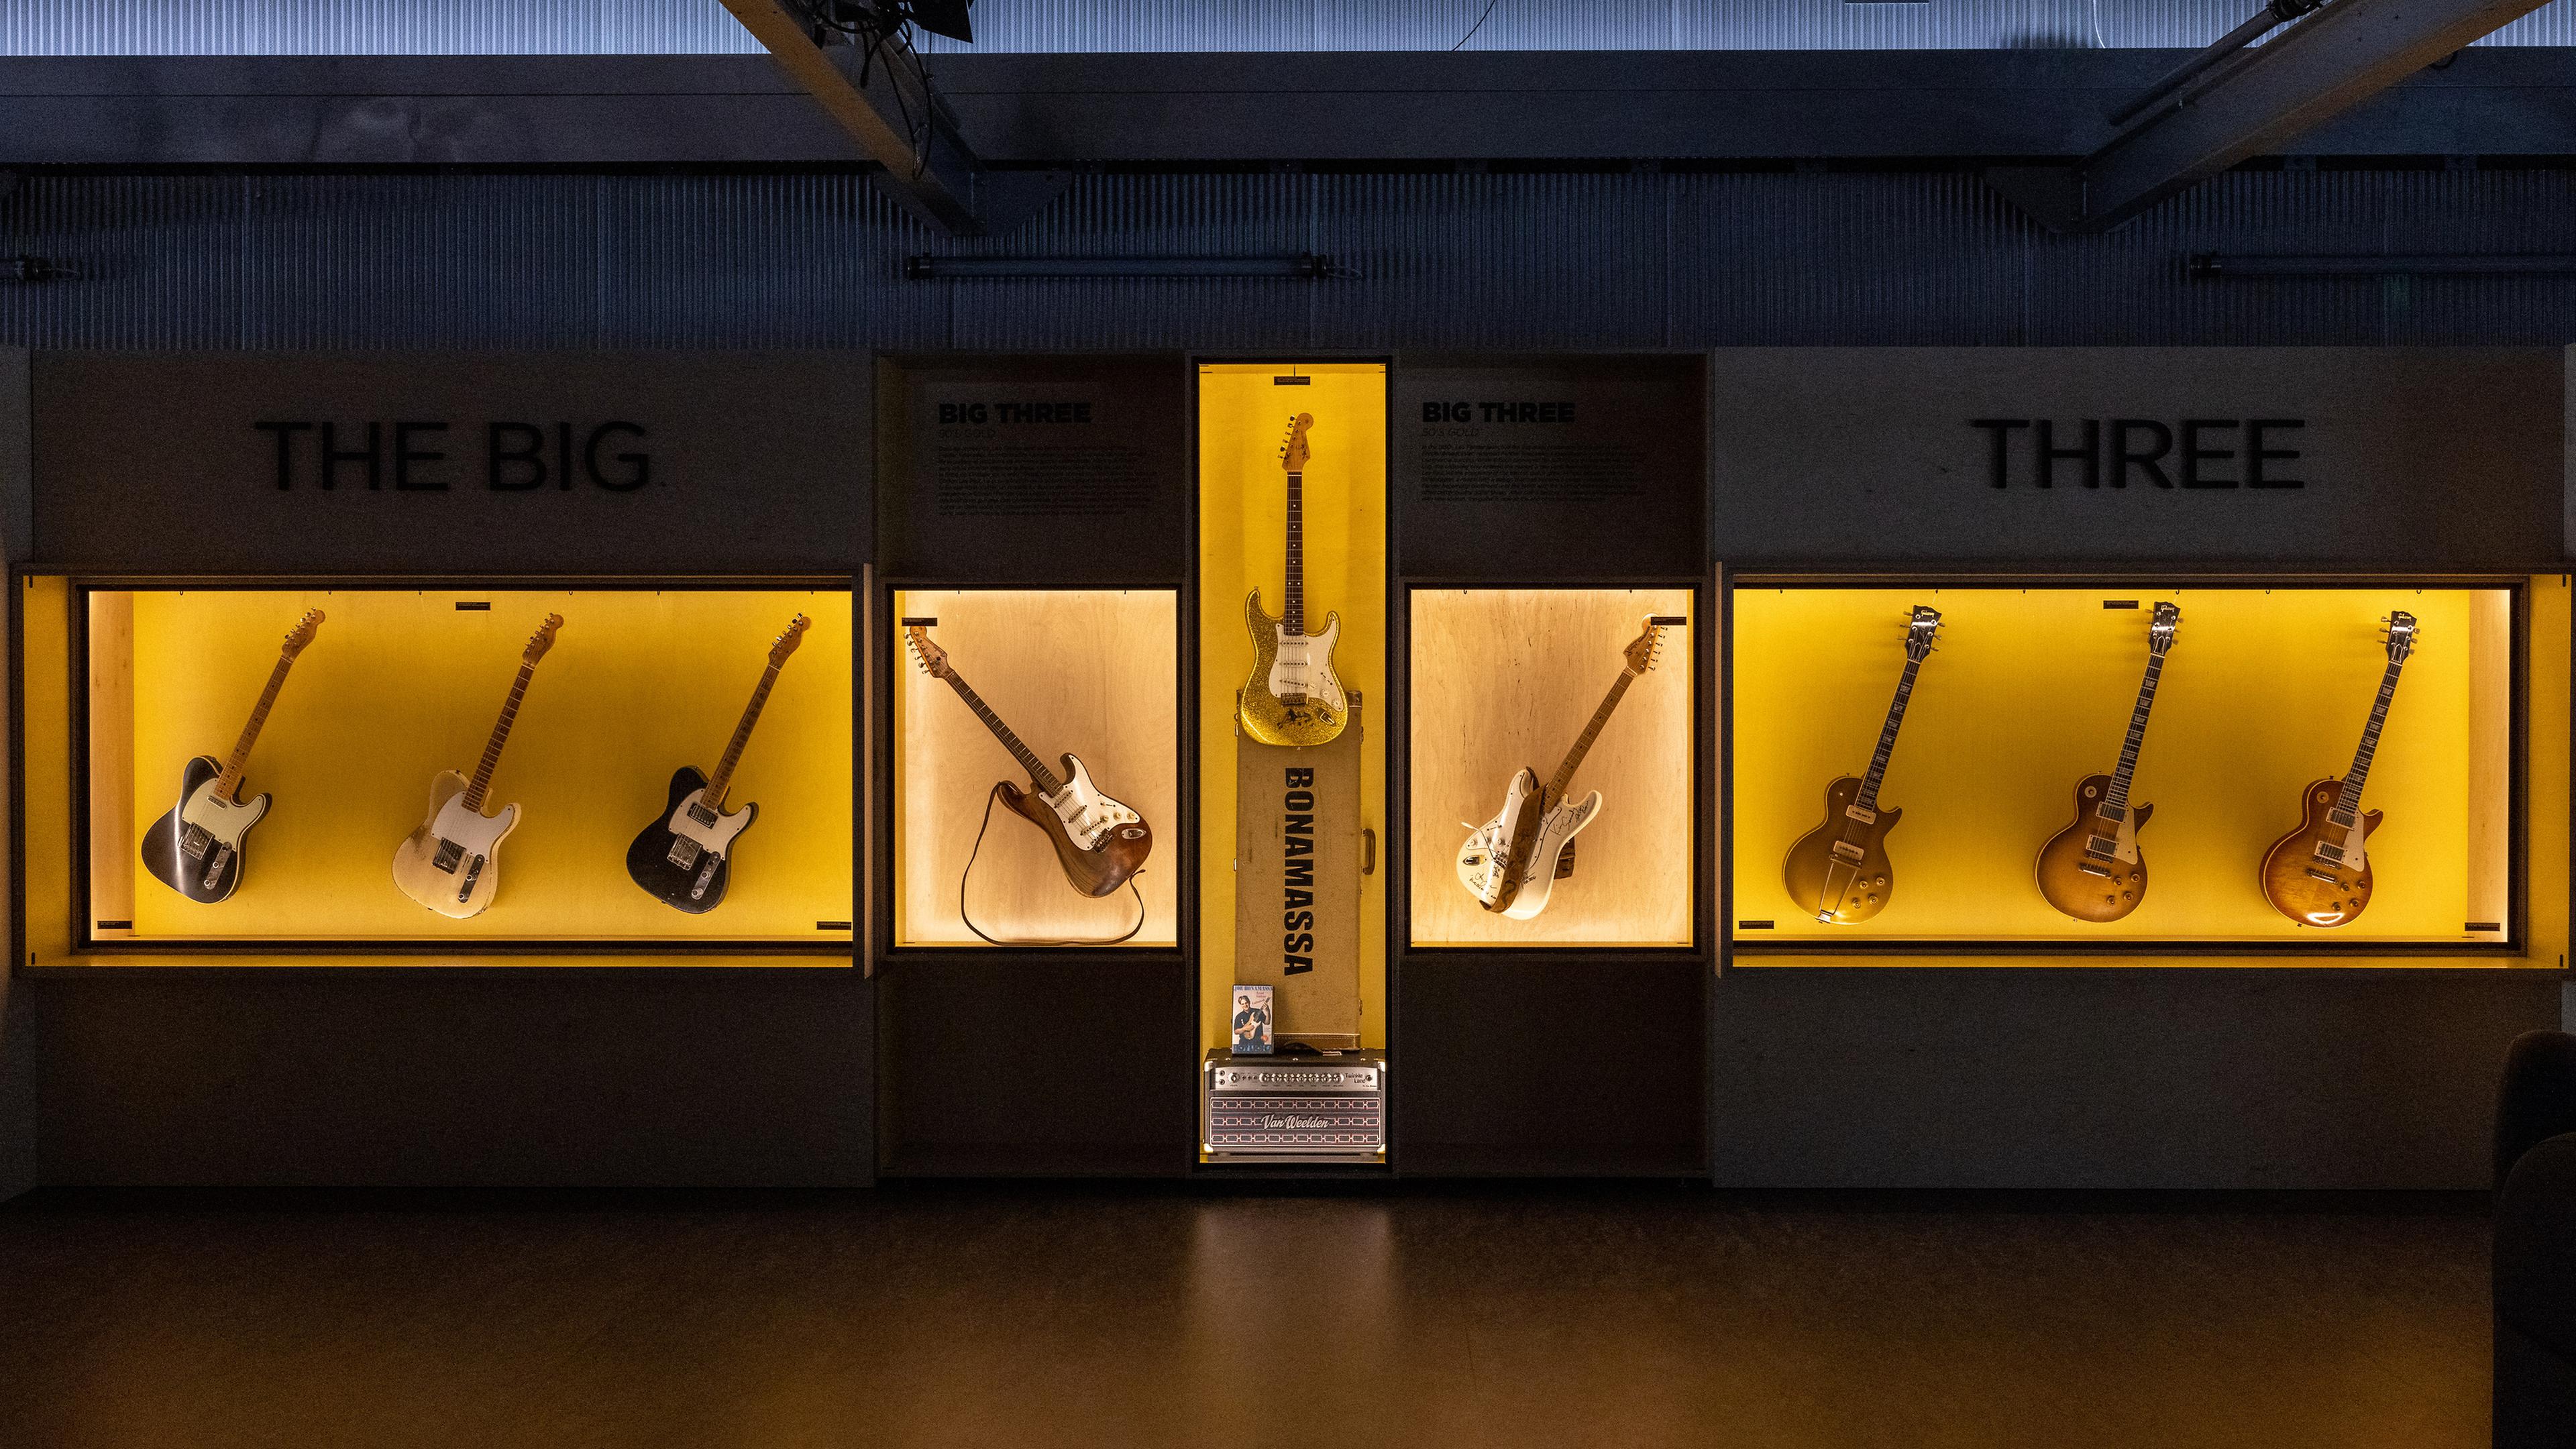 Une exposition sur l'histoire de la guitare électrique